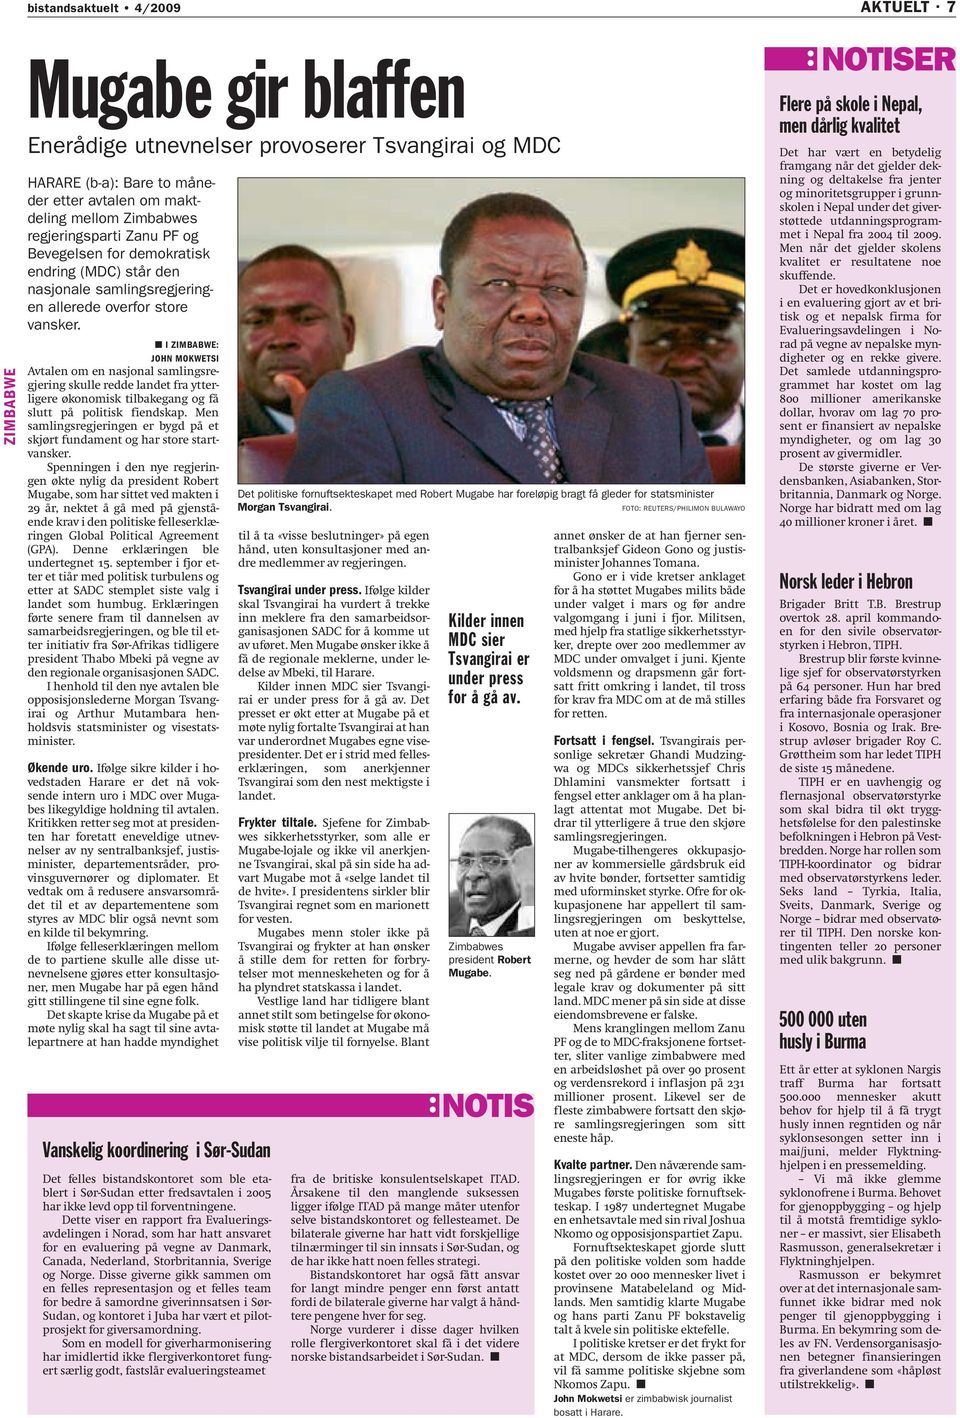 I ZIMBABWE: JOHN MOKWETSI Avtalen om en nasjonal samlingsregjering skulle redde landet fra ytterligere økonomisk tilbakegang og få slutt på politisk fiendskap.